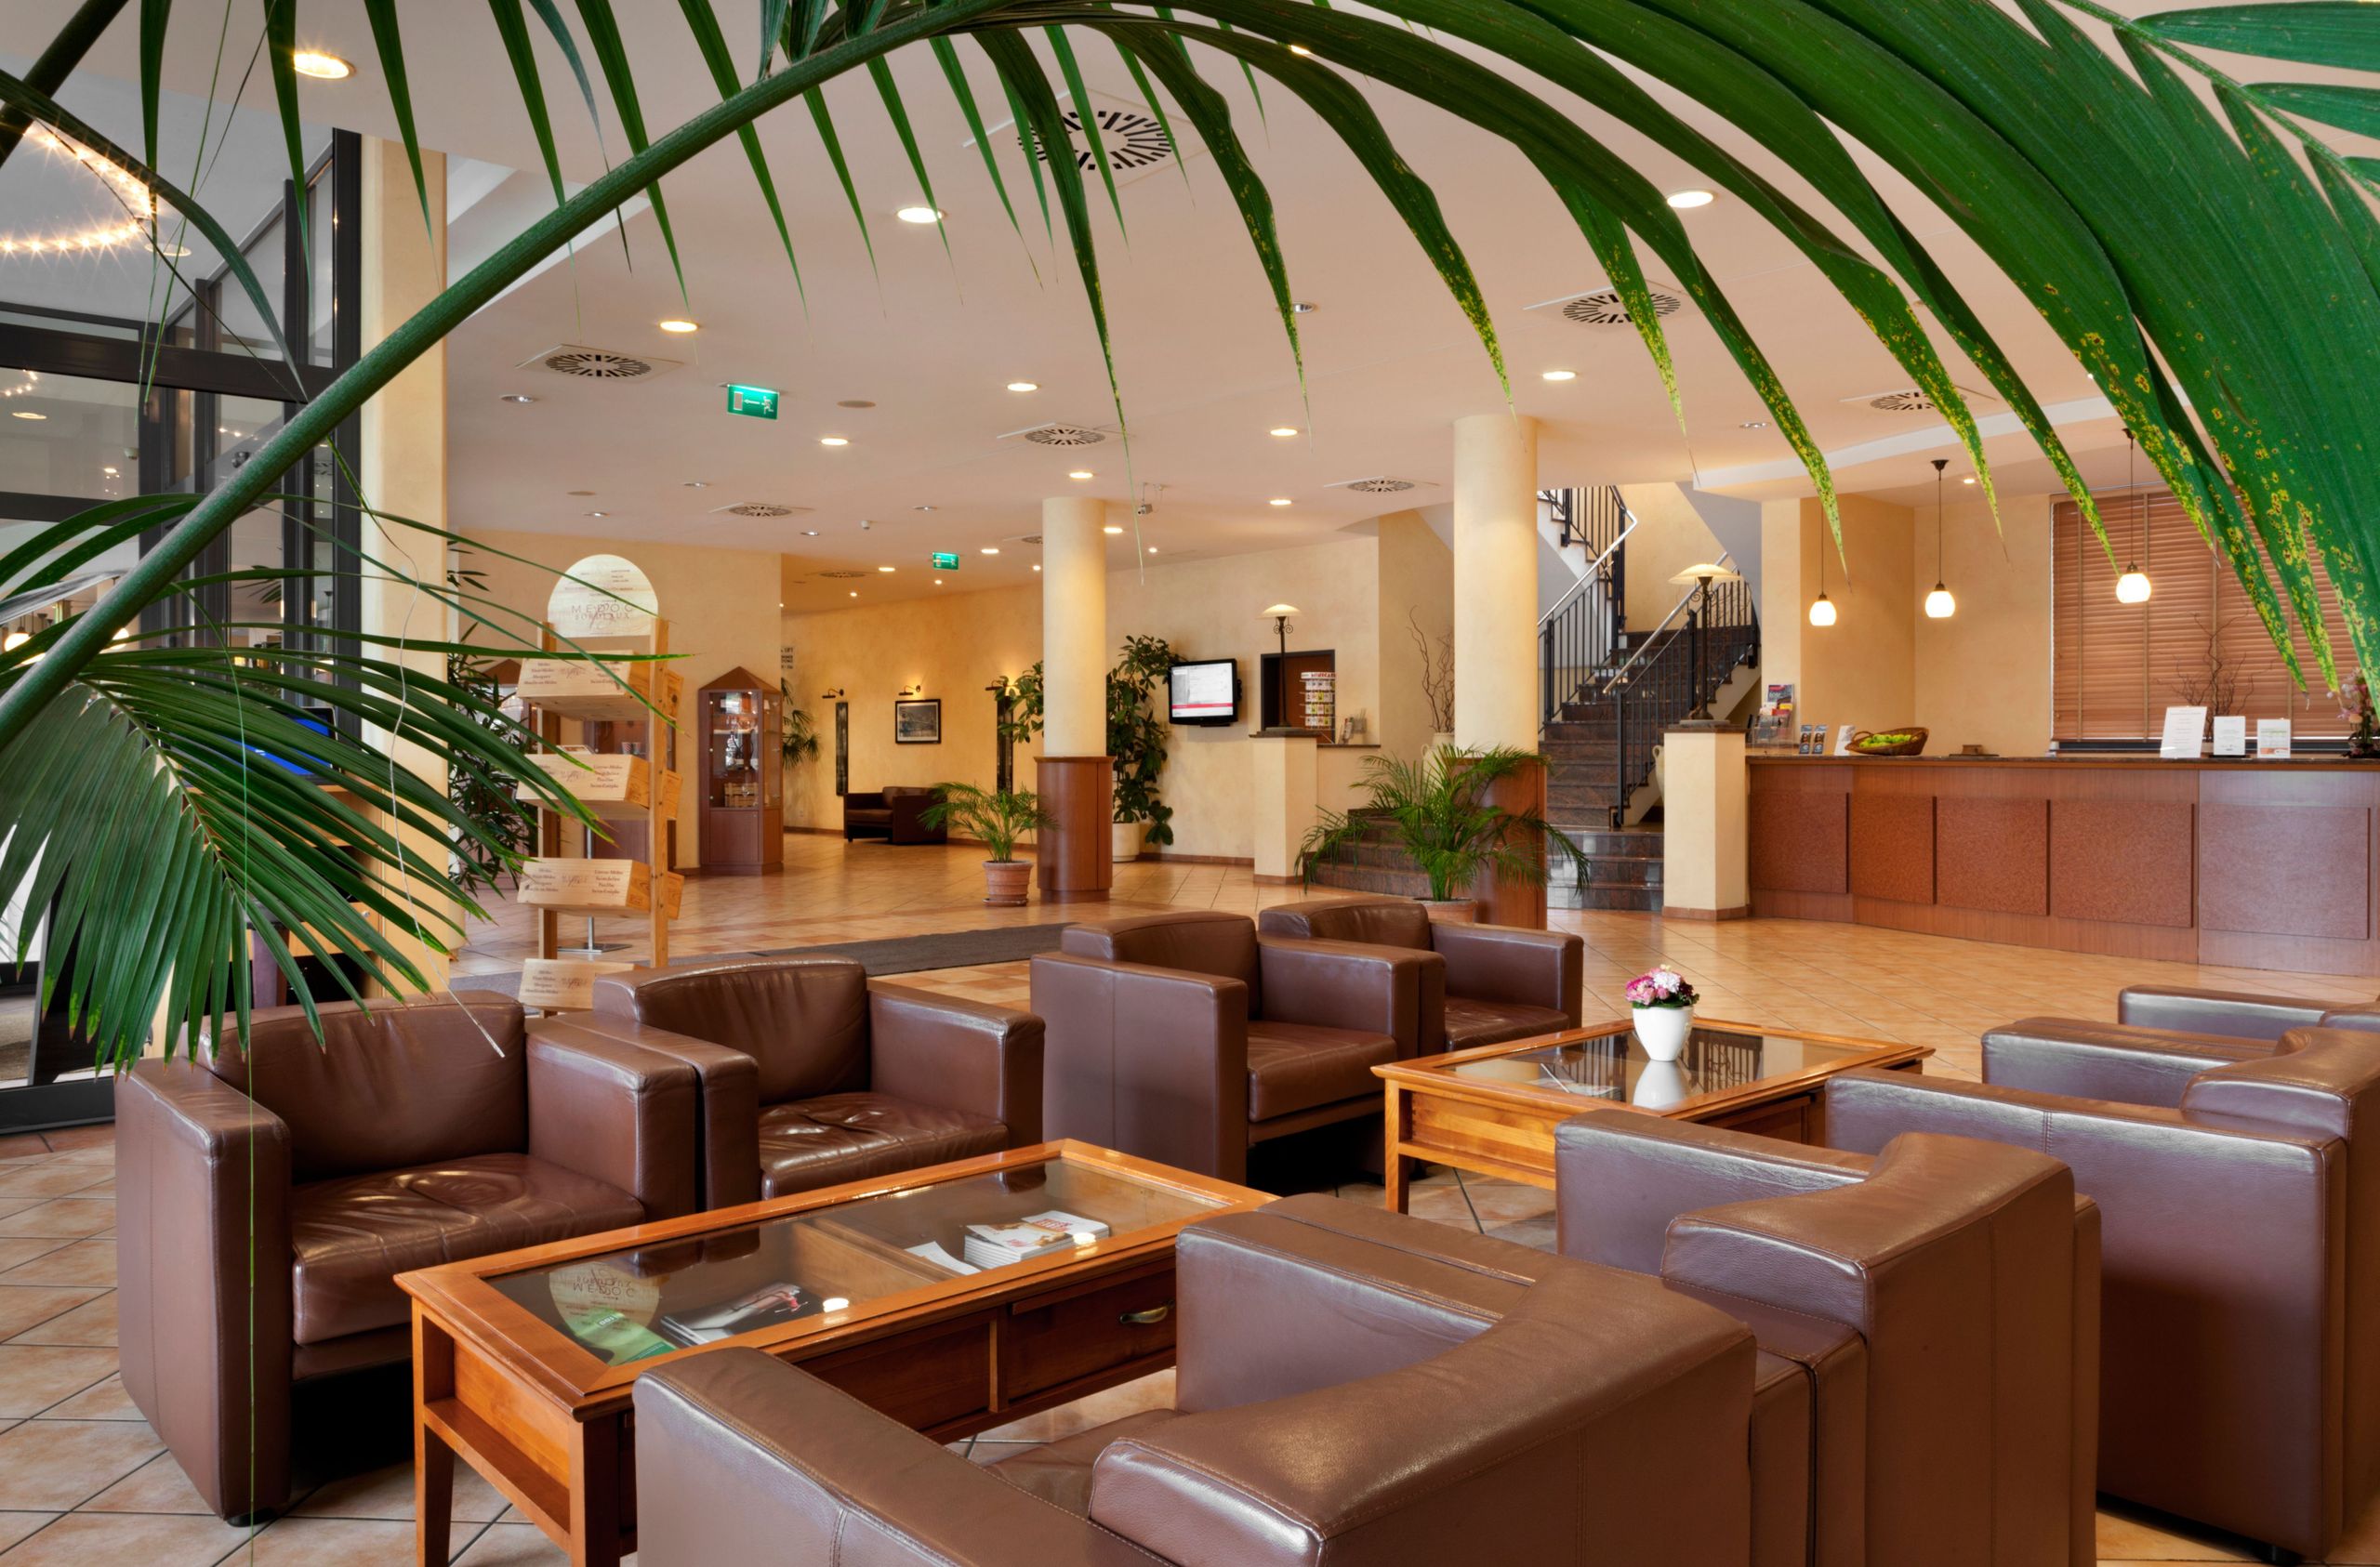 IntercityHotel Bremen - lobby - recepção - salão